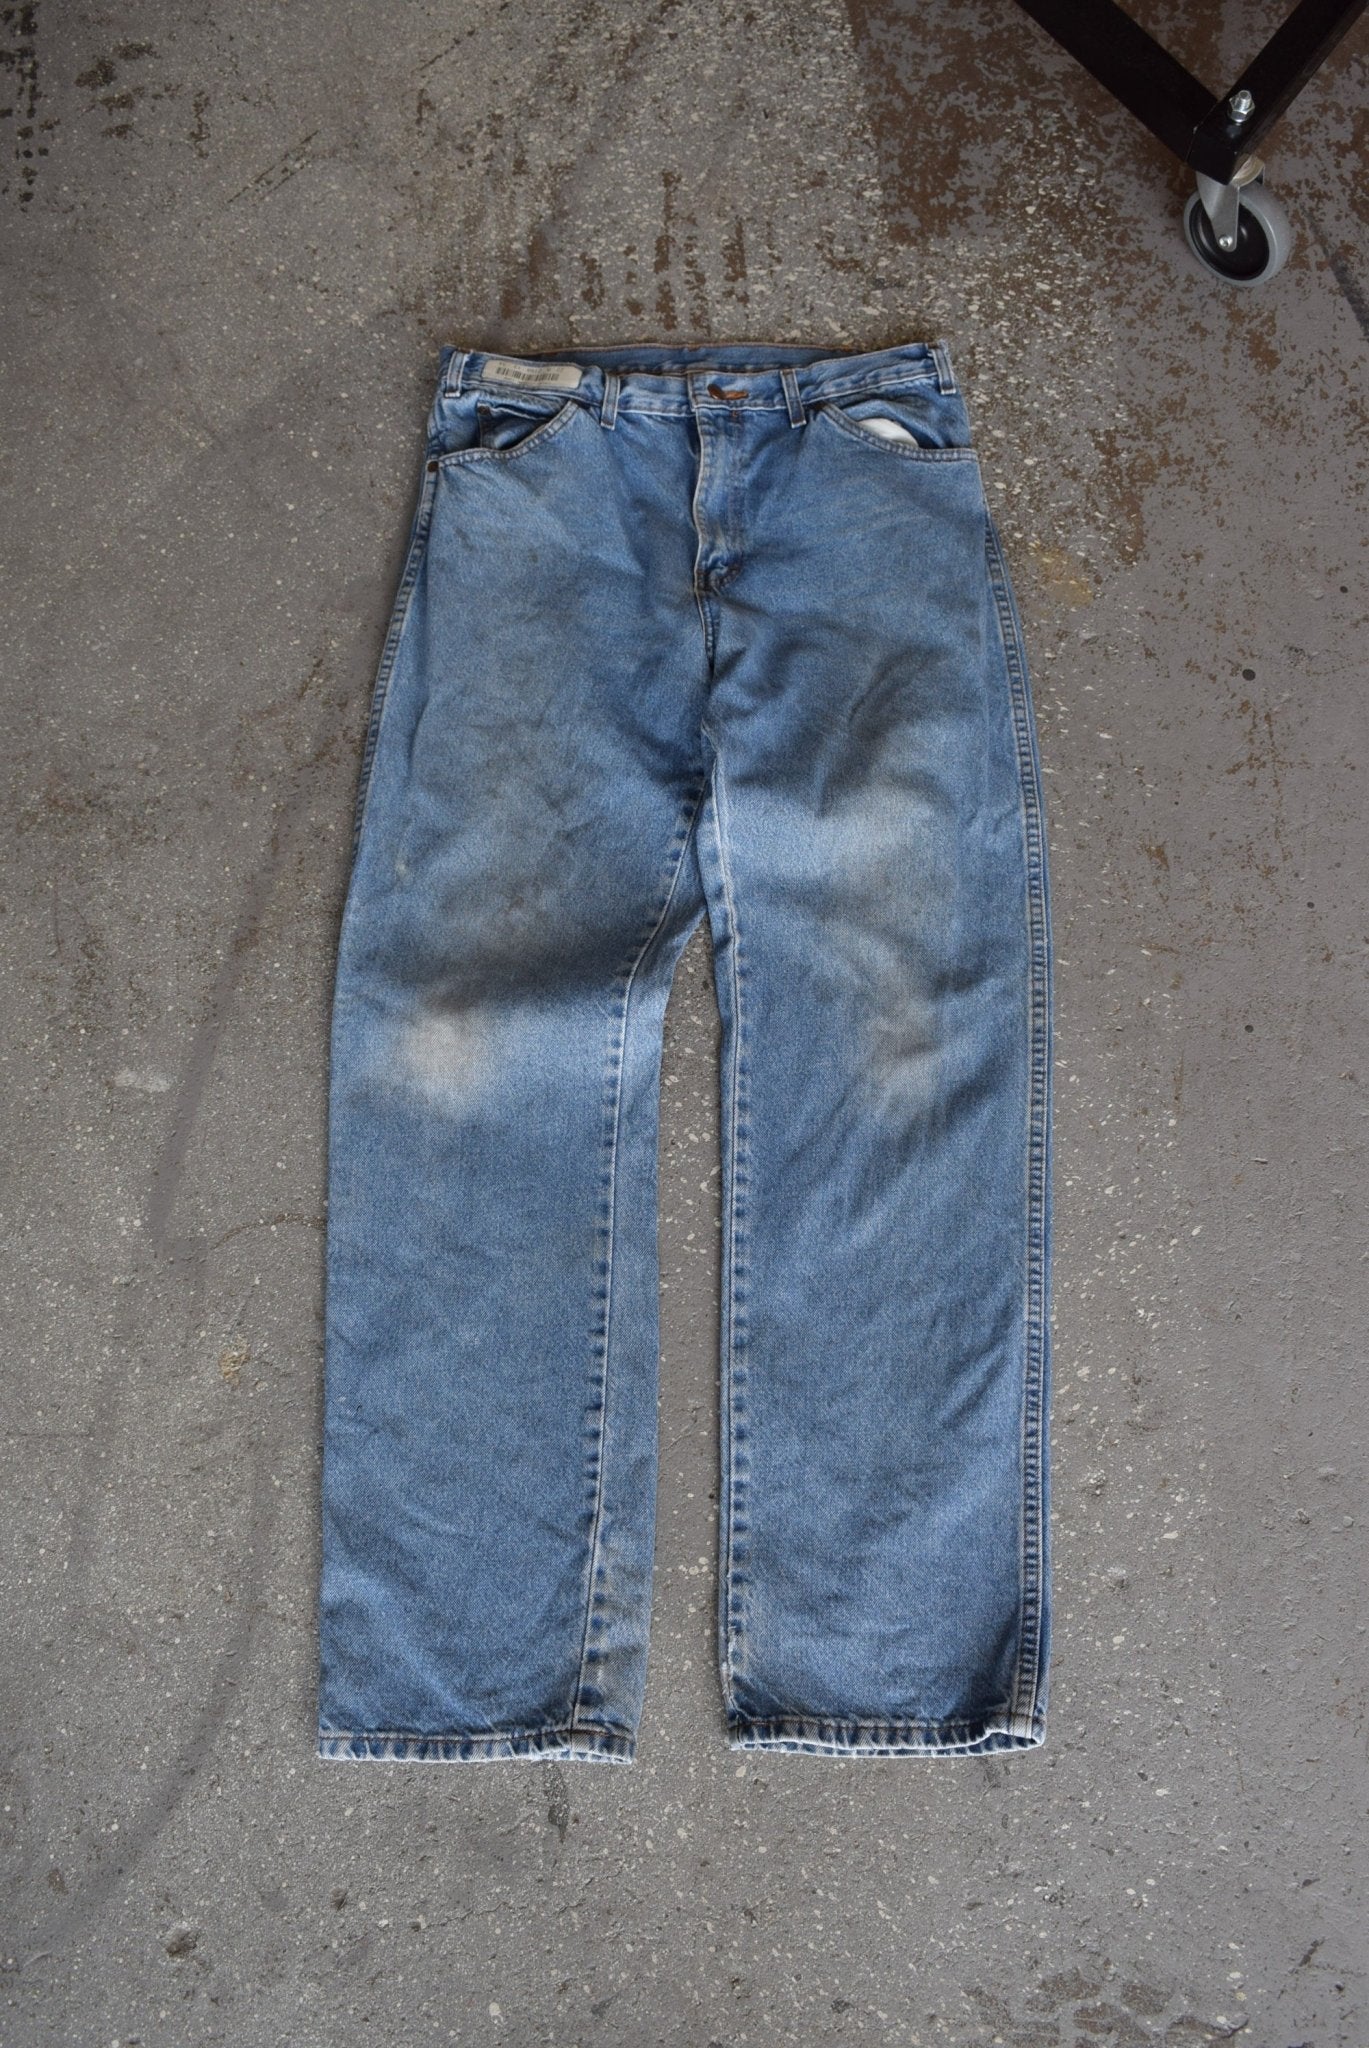 Vintage Dickies Workwear Jeans (33) - Retrospective Store